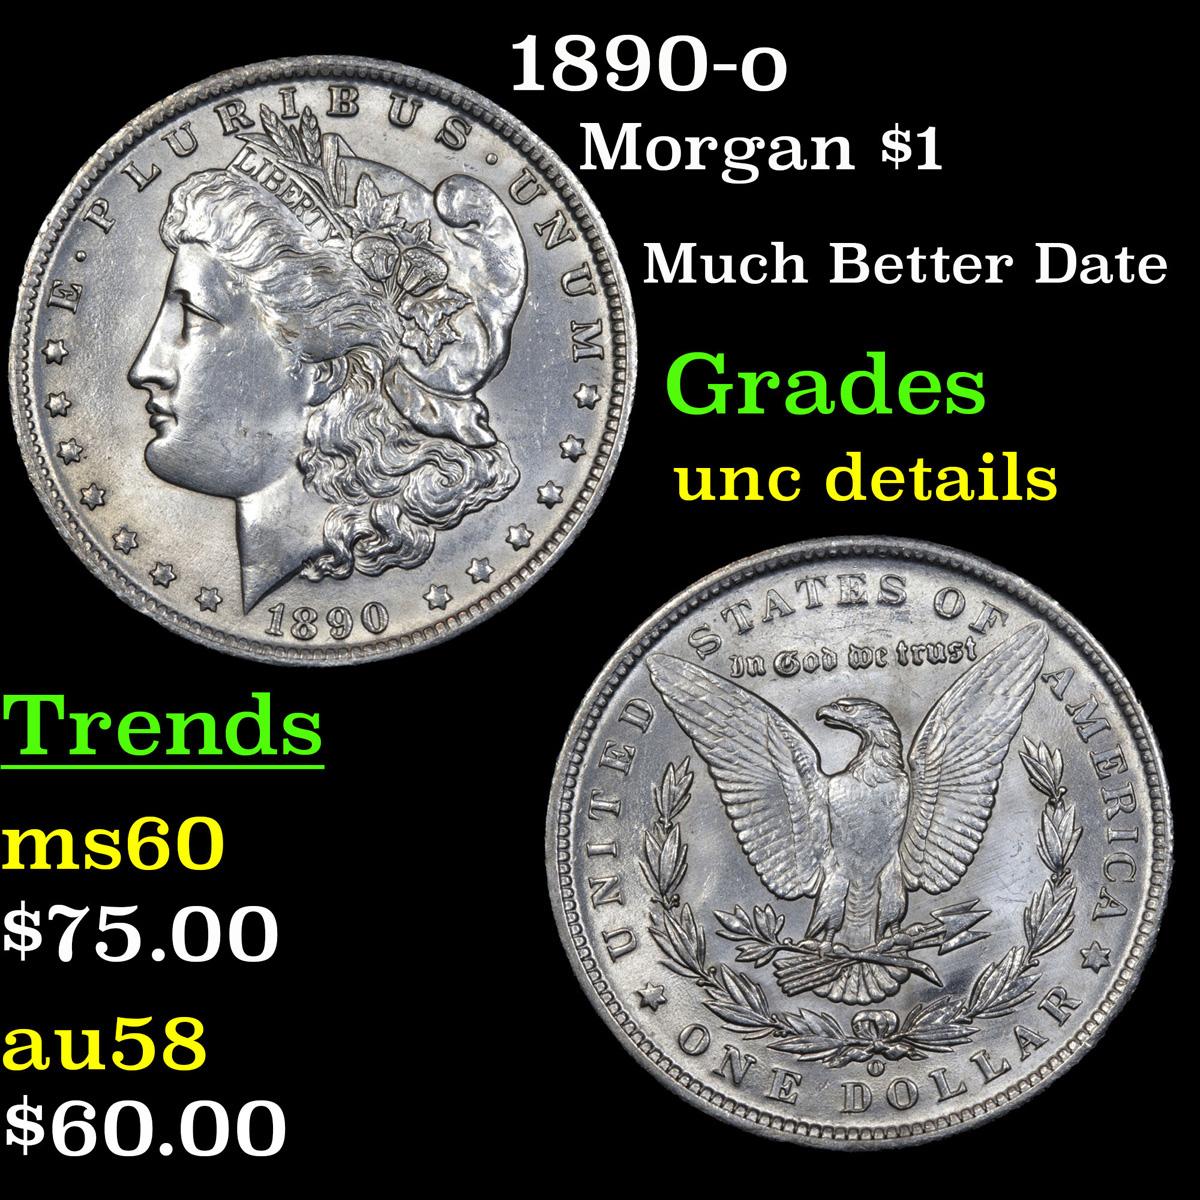 1890-o Morgan Dollar $1 Grades Unc Details